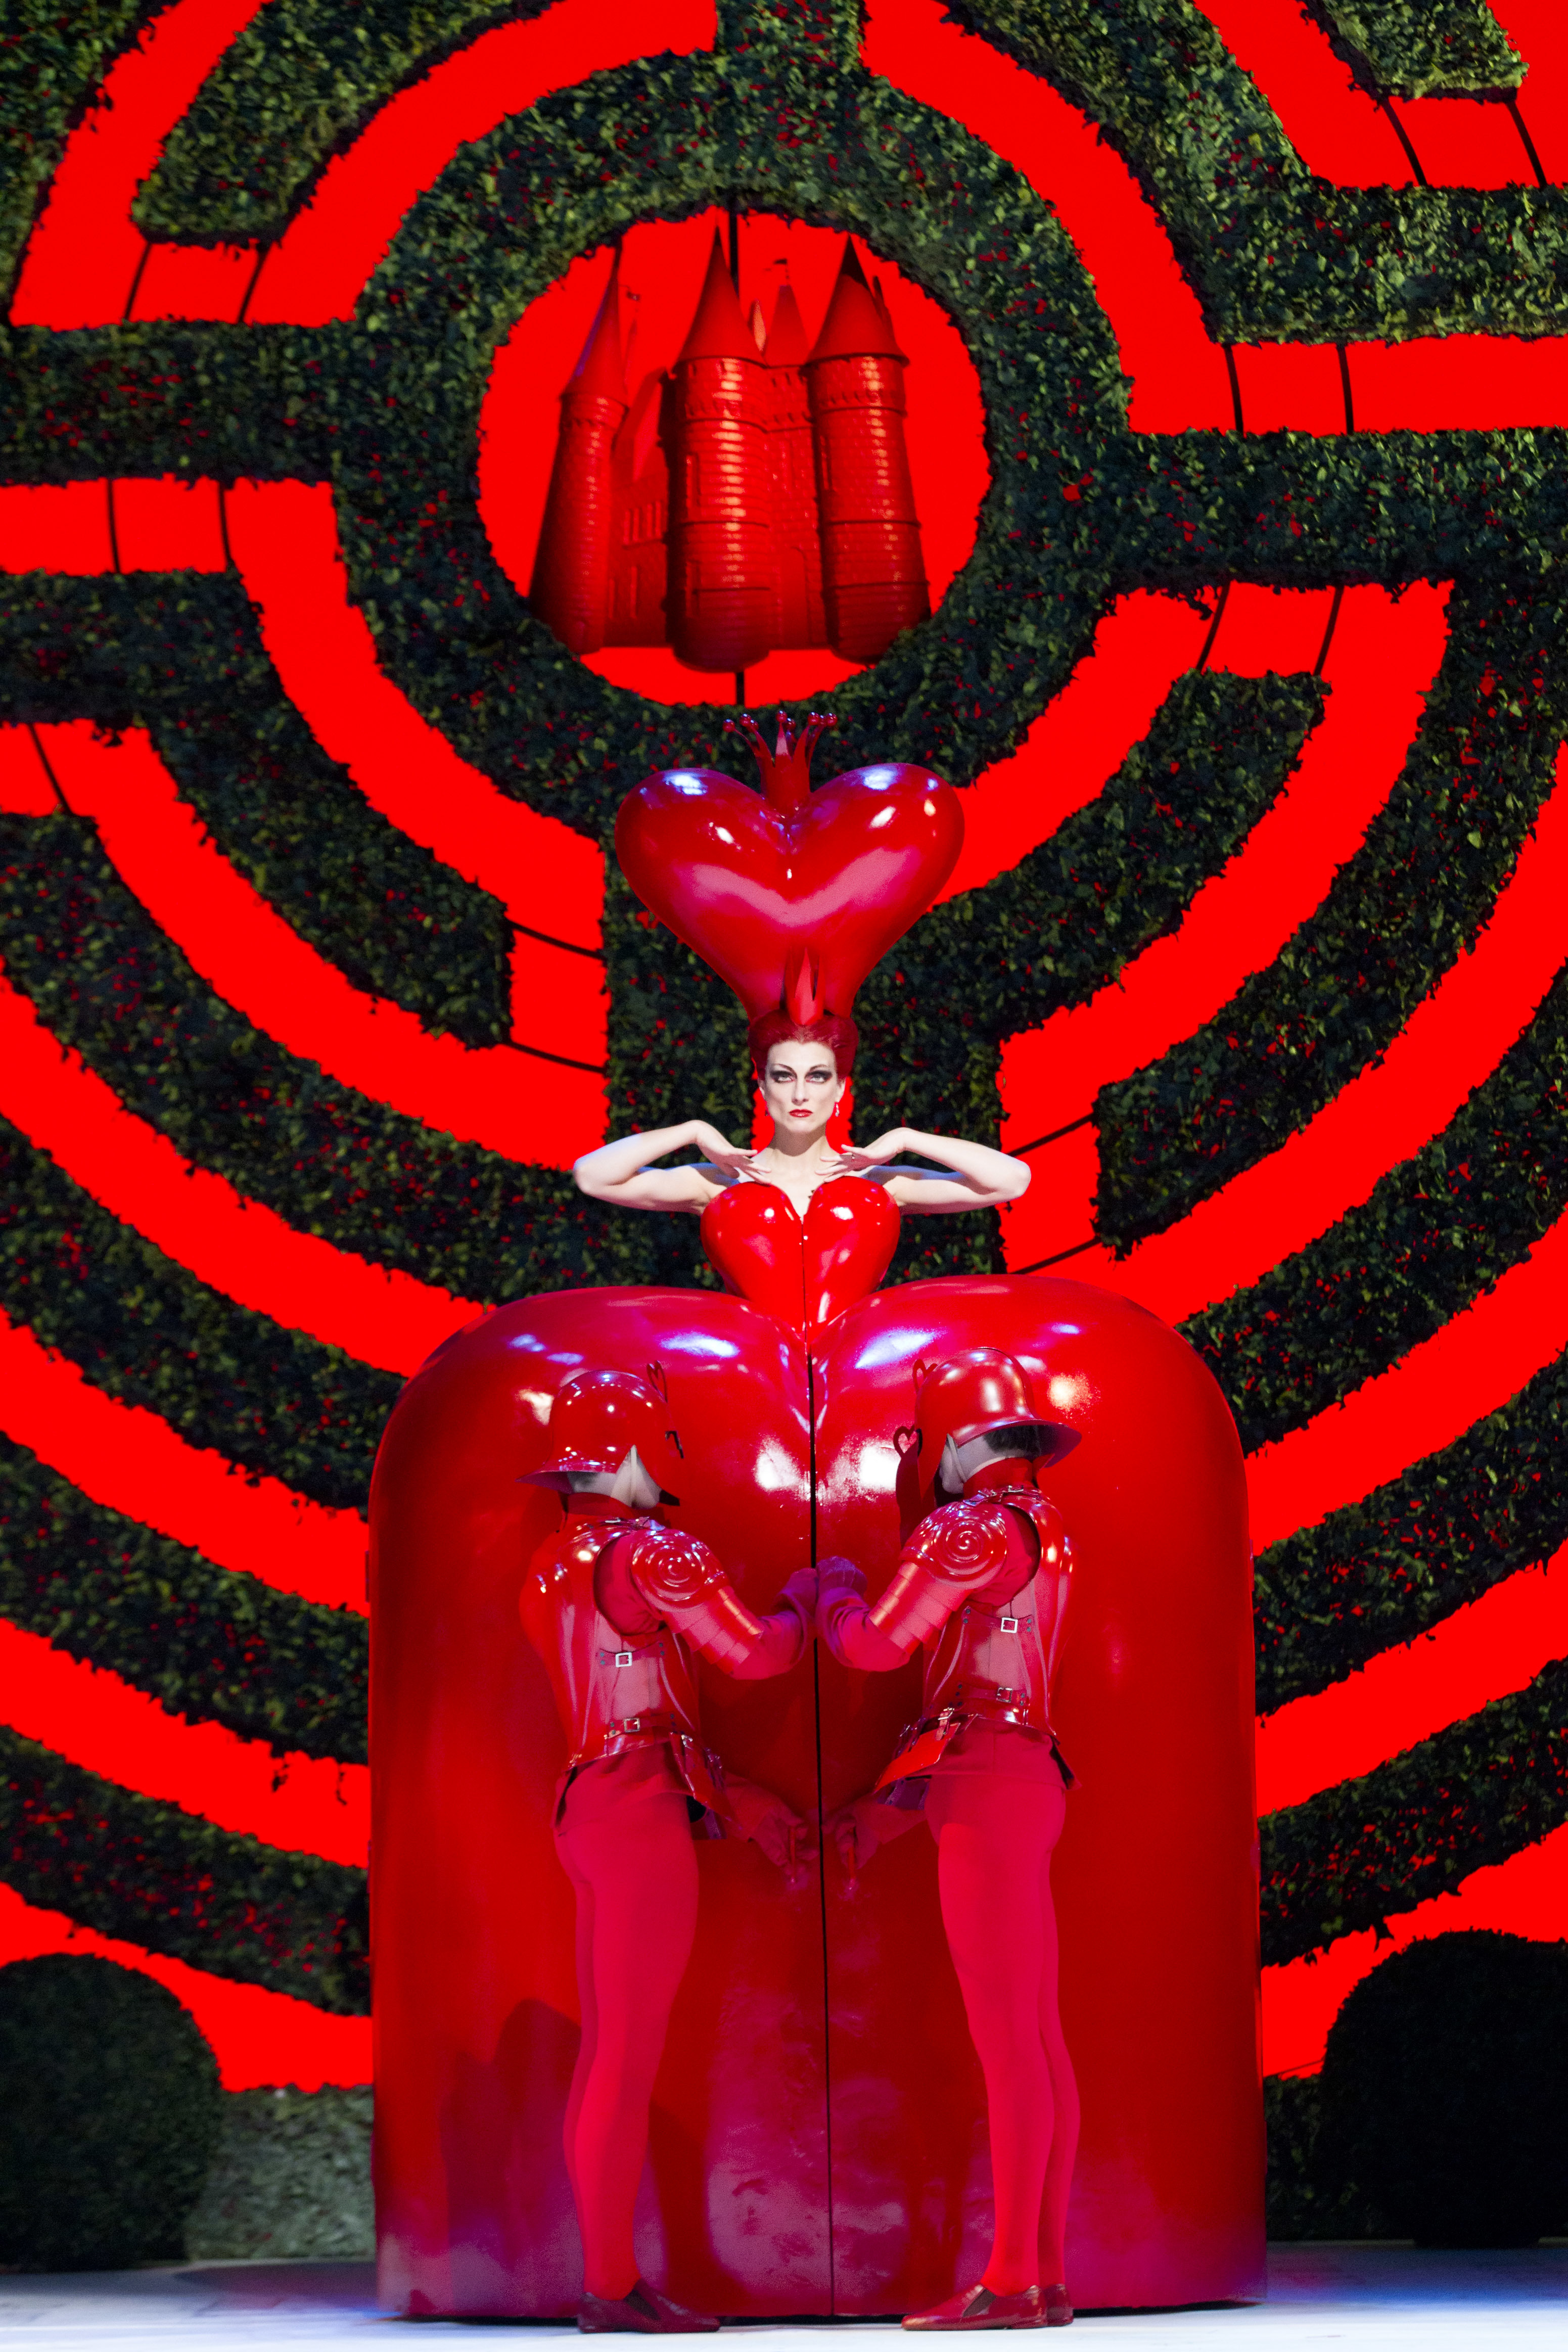 ハートのクイーンを演じるゼナイダ・ヤノウスキー、ロンドンのロイヤル・オペラ・ハウスでの英国ロイヤル・バレエ団公演 『不思議の国のアリス』より、2011年 (c) ROH, Johan Persson, 2011. Sets and costumes by Bob Crowley